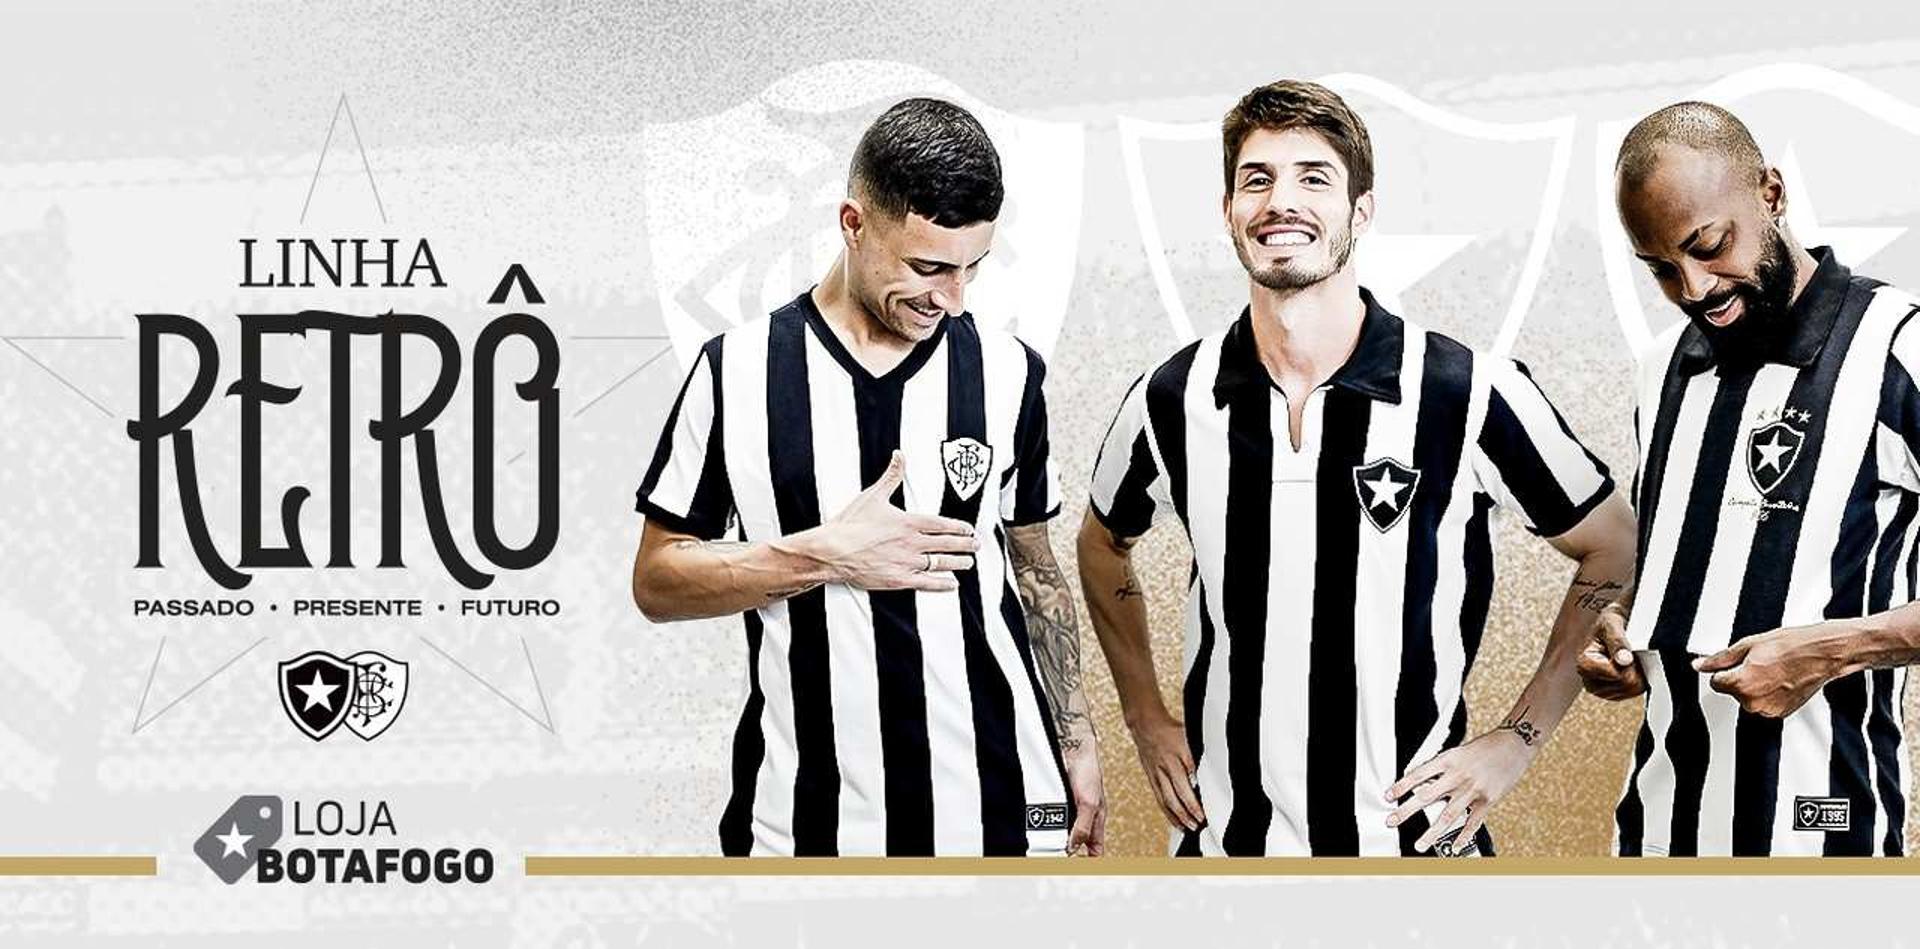 Botafogo - Camisas retrô